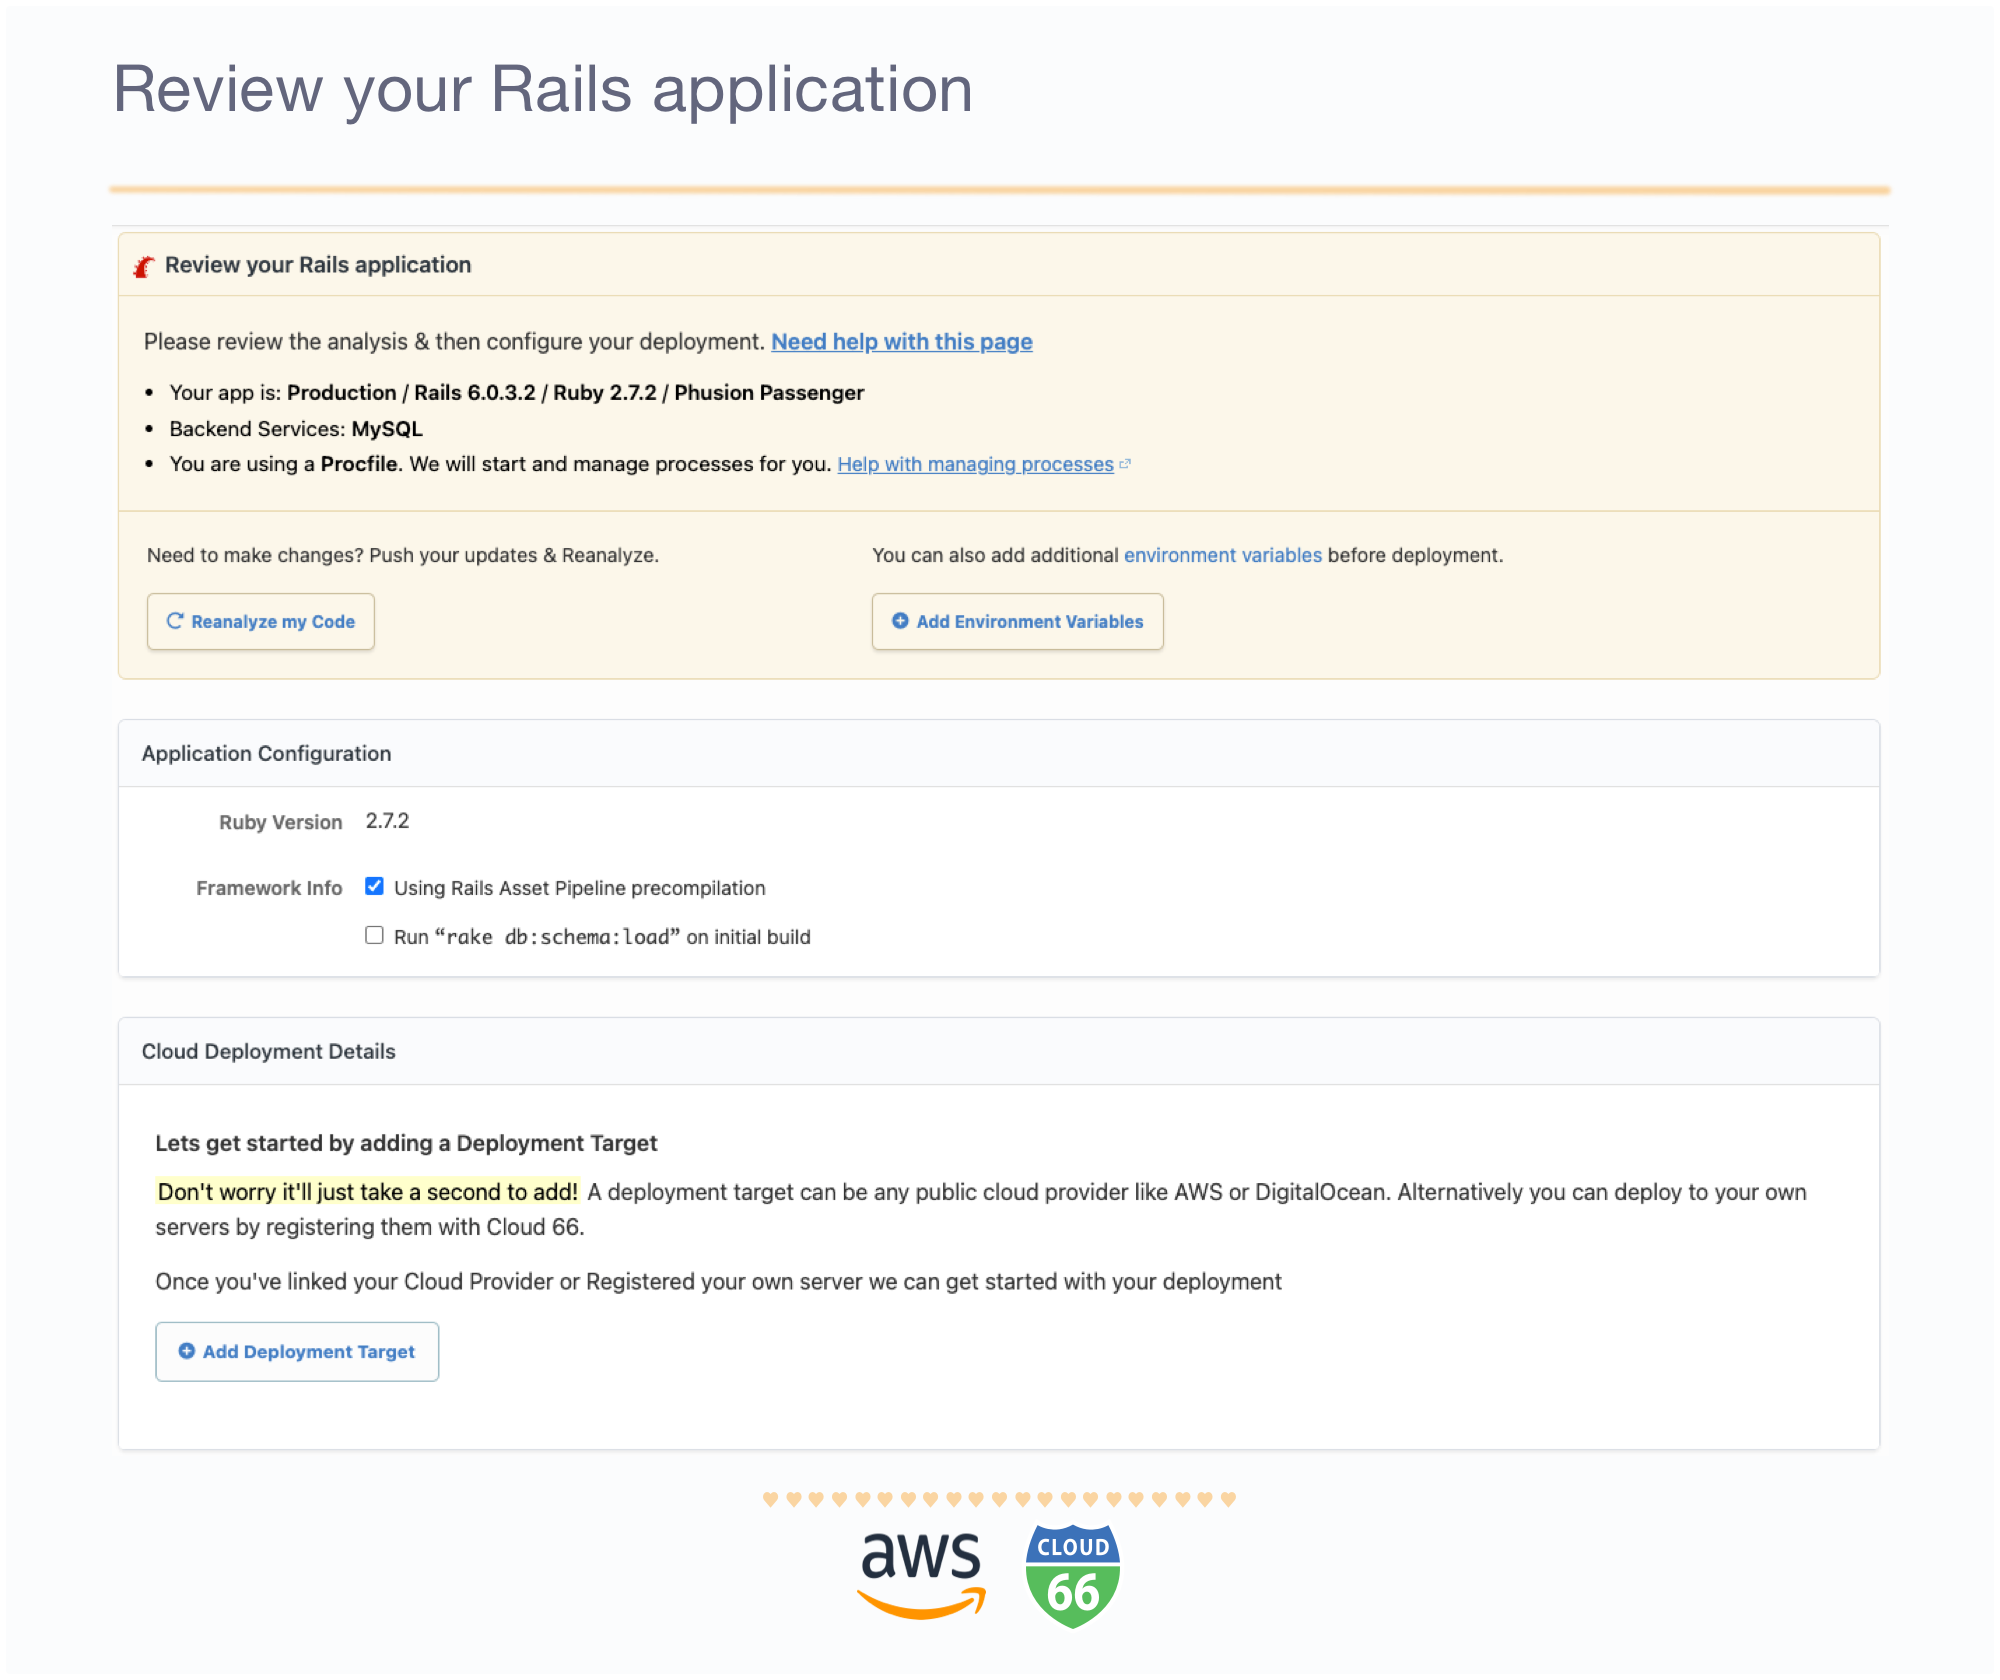 Review your Rails application details.